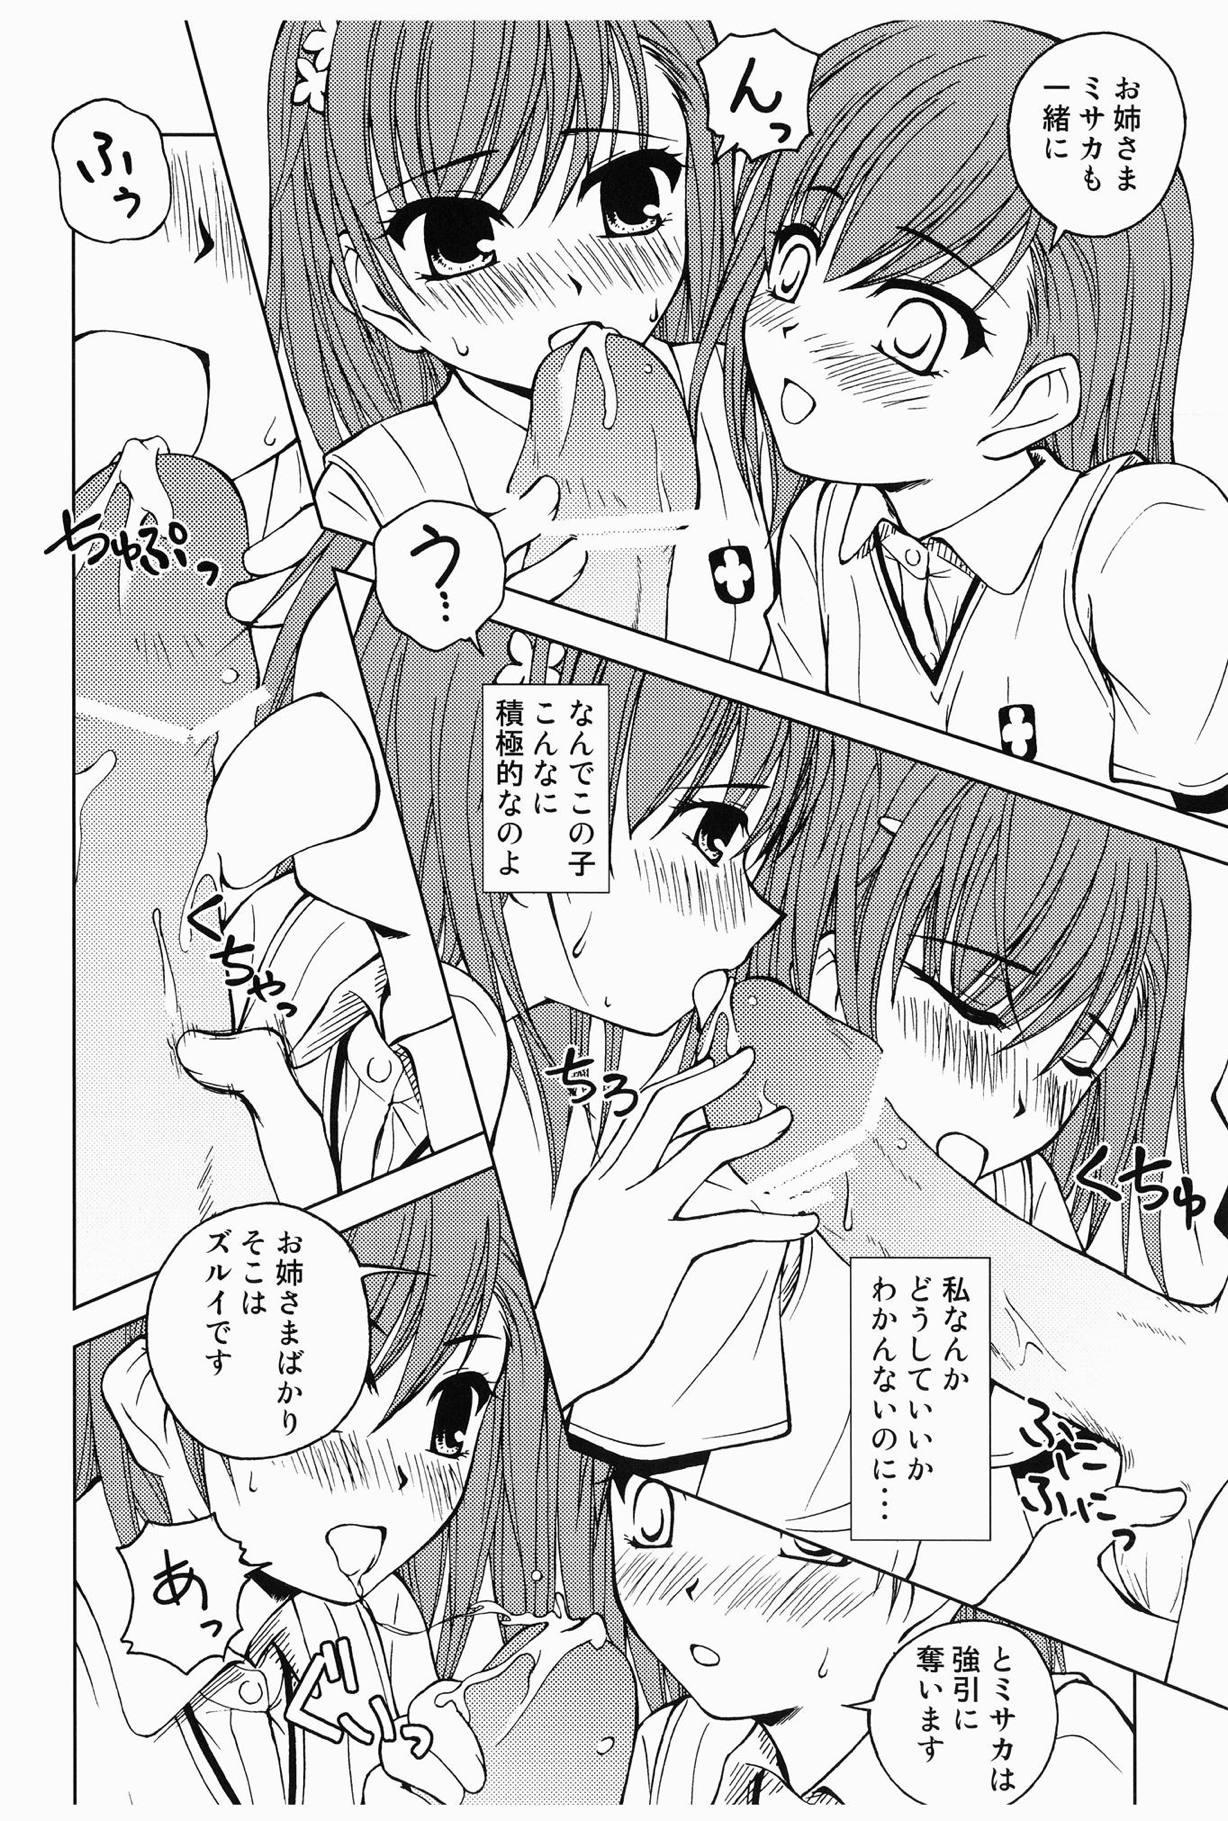 Oldyoung Touma to Misaka to Railgun - Toaru kagaku no railgun Spycam - Page 7